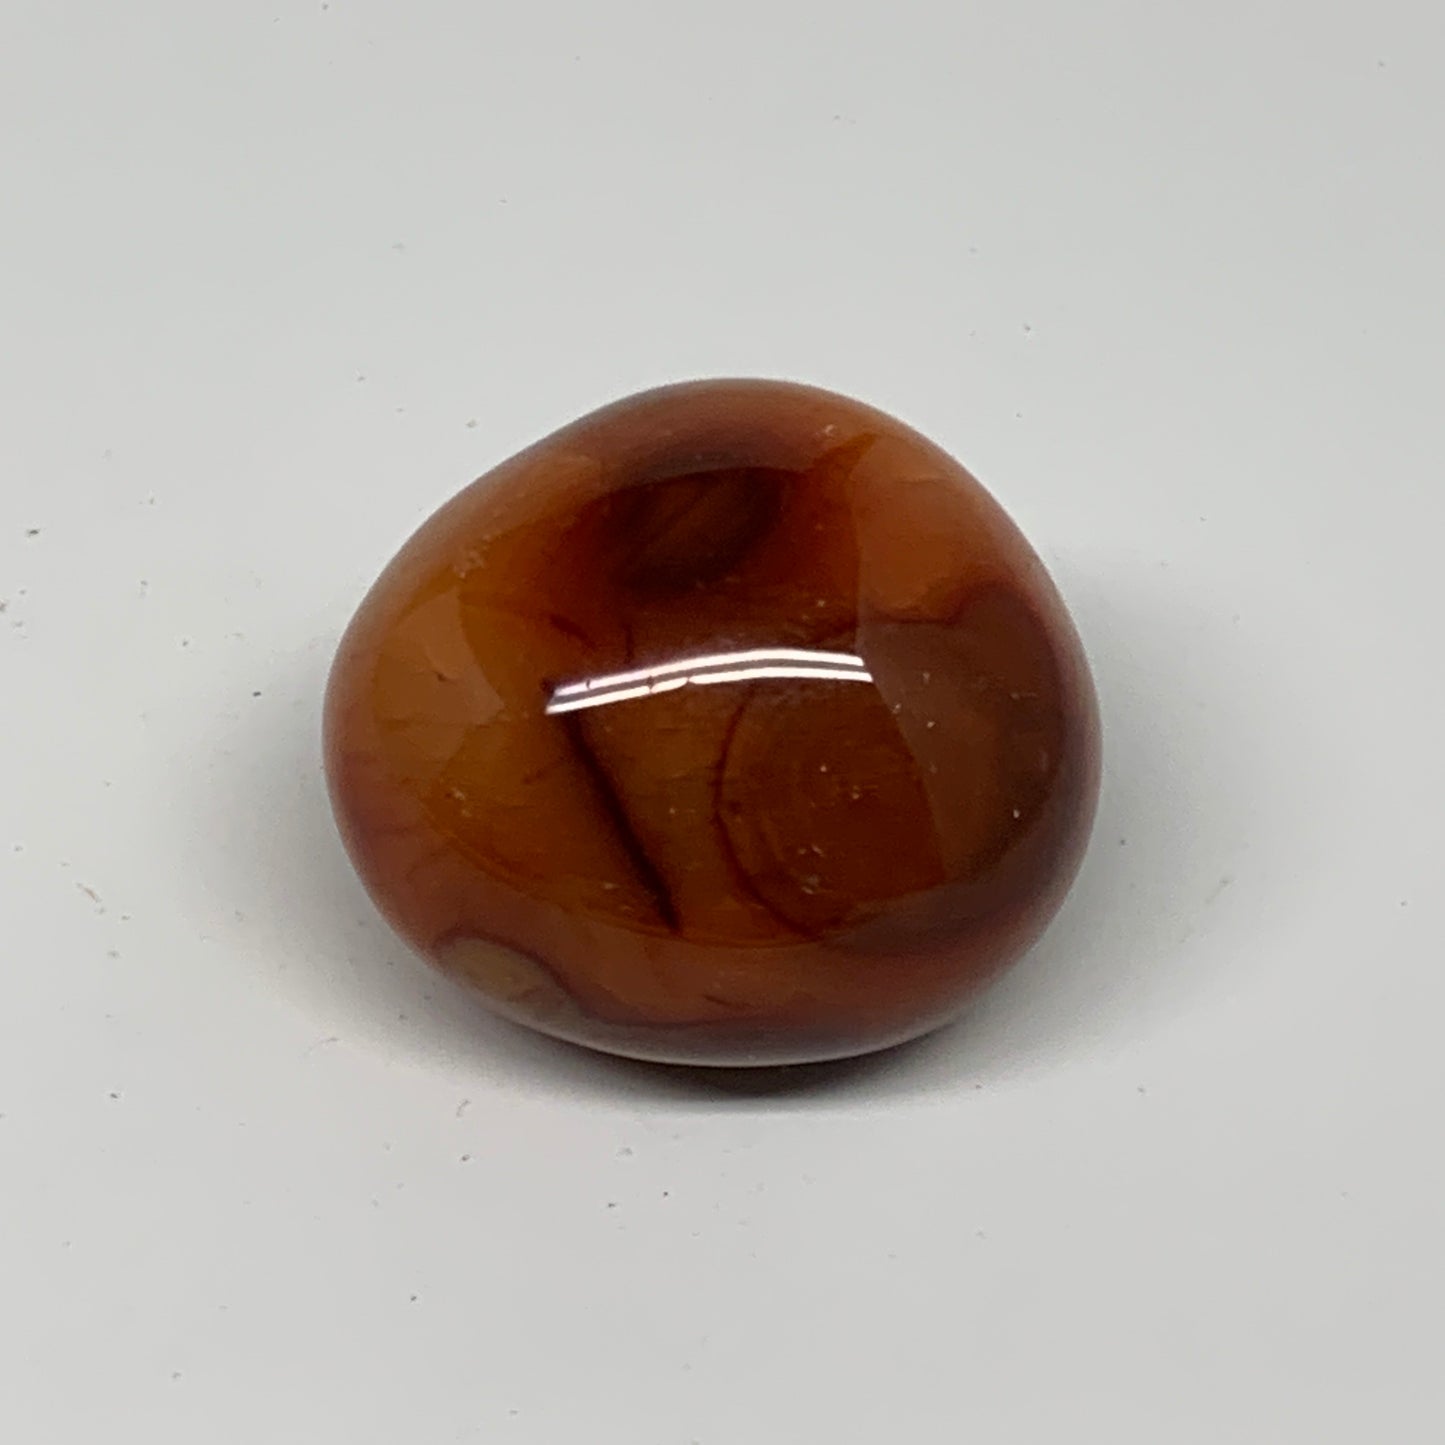 96g, 1.9"x1.7"x1.4", Red Carnelian Palm-Stone Gem Crystal Polished, B28463